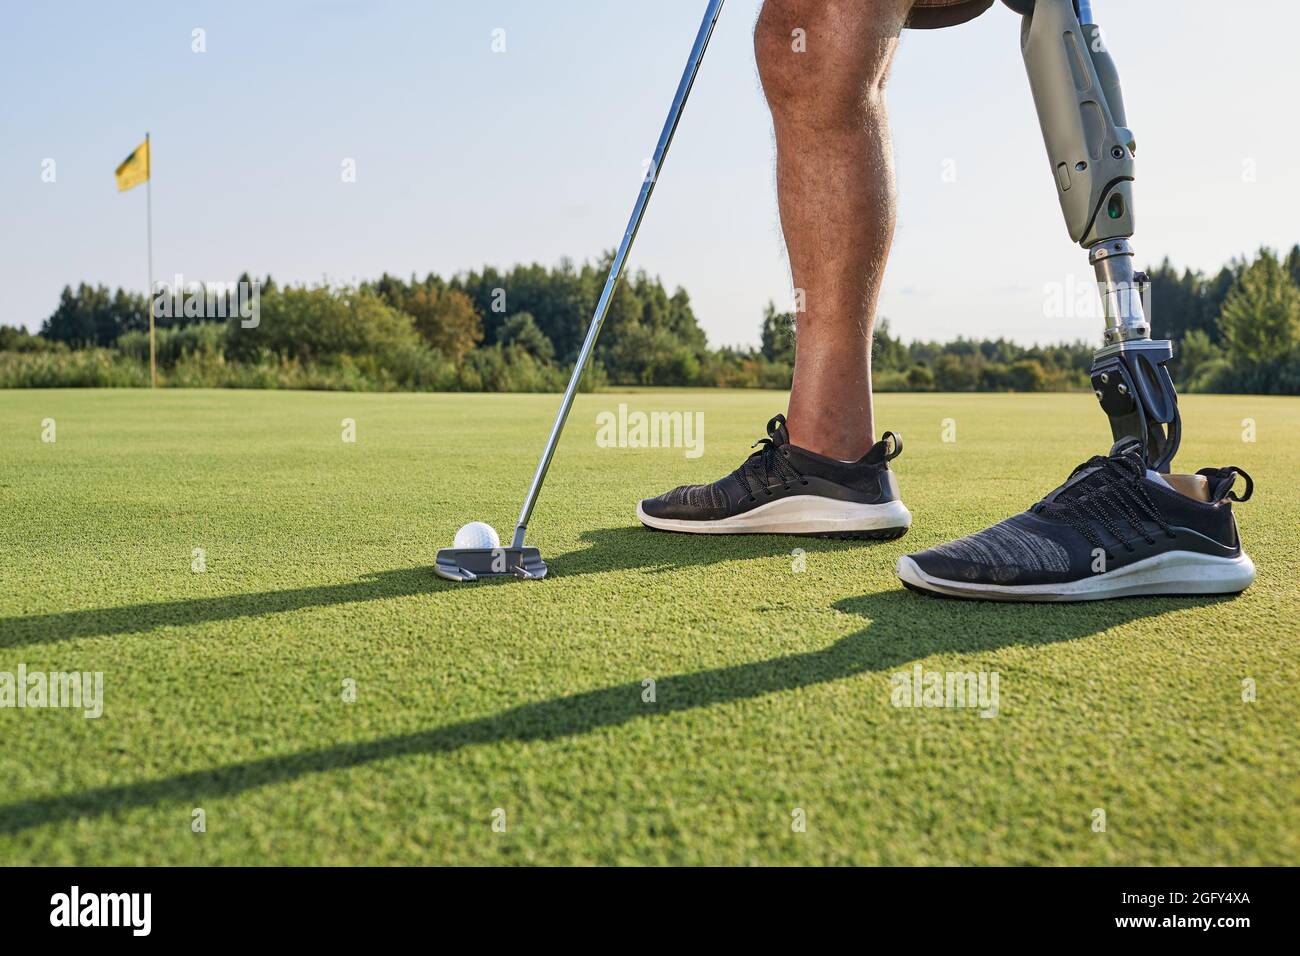 Golf pour les personnes handicapées et avec amputation de jambe. Homme avec une jambe artificielle jouant au golf et vit une vie pleine Banque D'Images